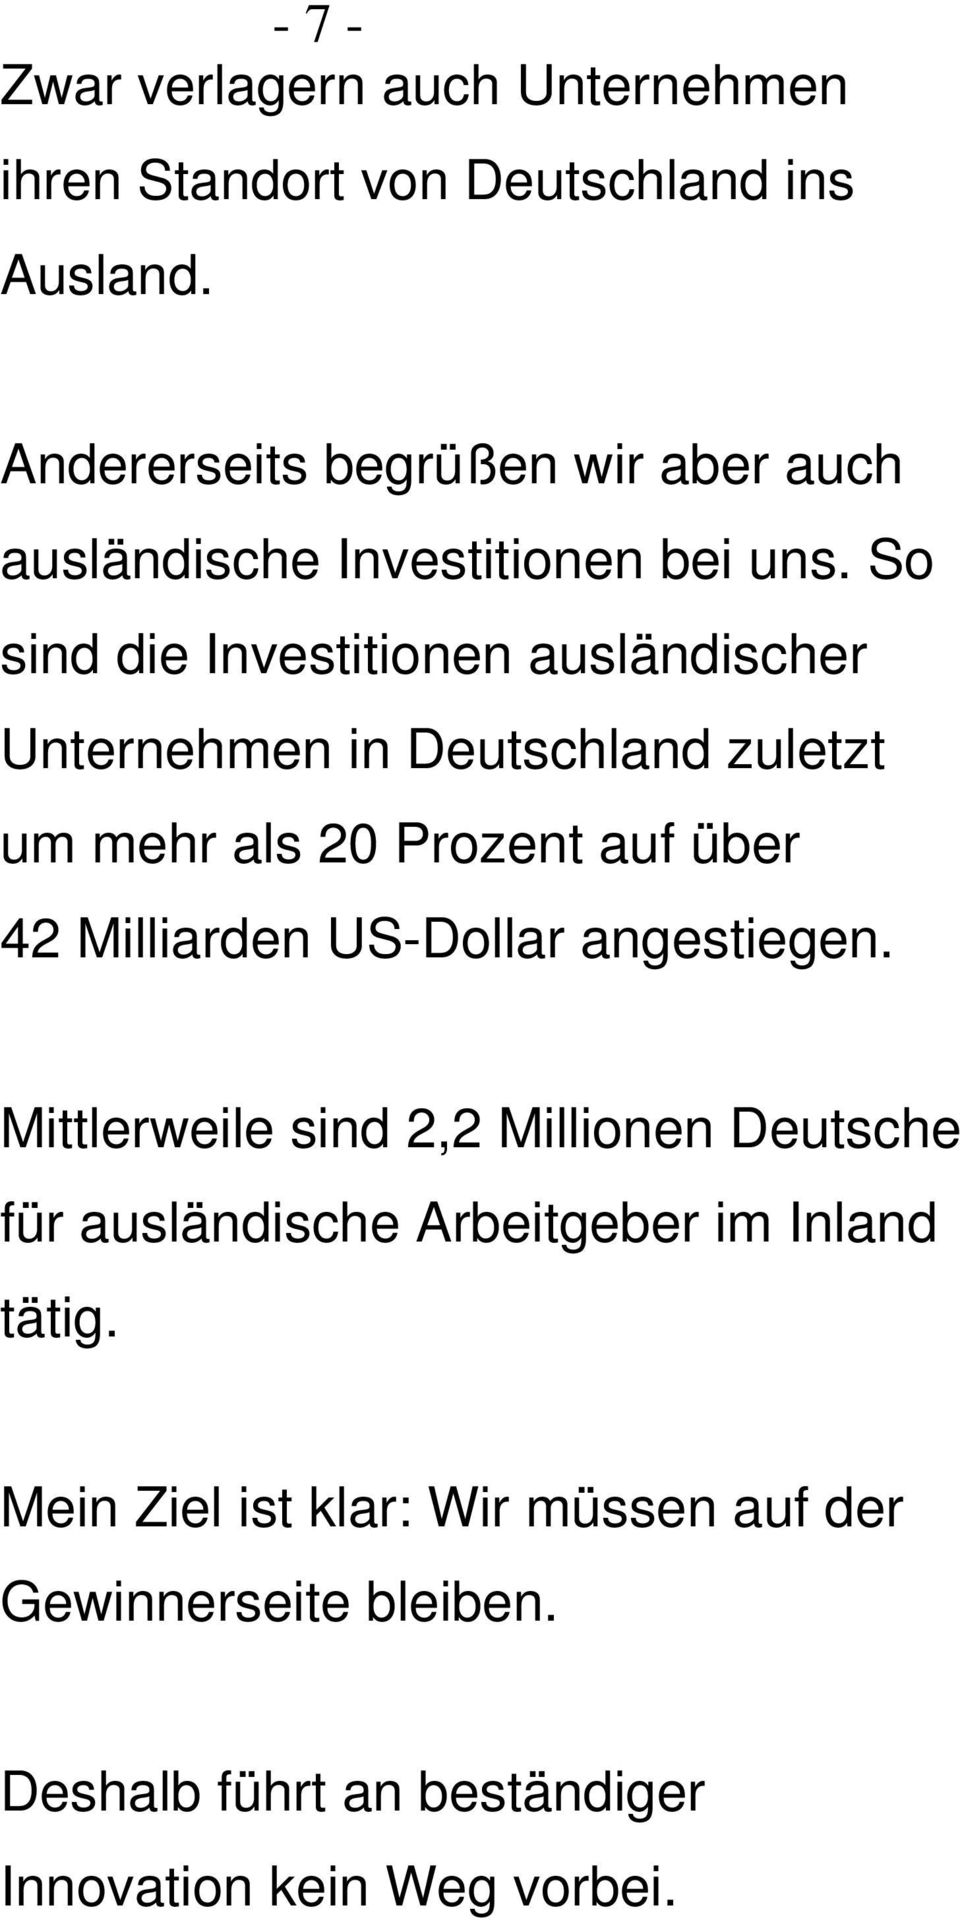 So sind die Investitionen ausländischer Unternehmen in Deutschland zuletzt um mehr als 20 Prozent auf über 42 Milliarden